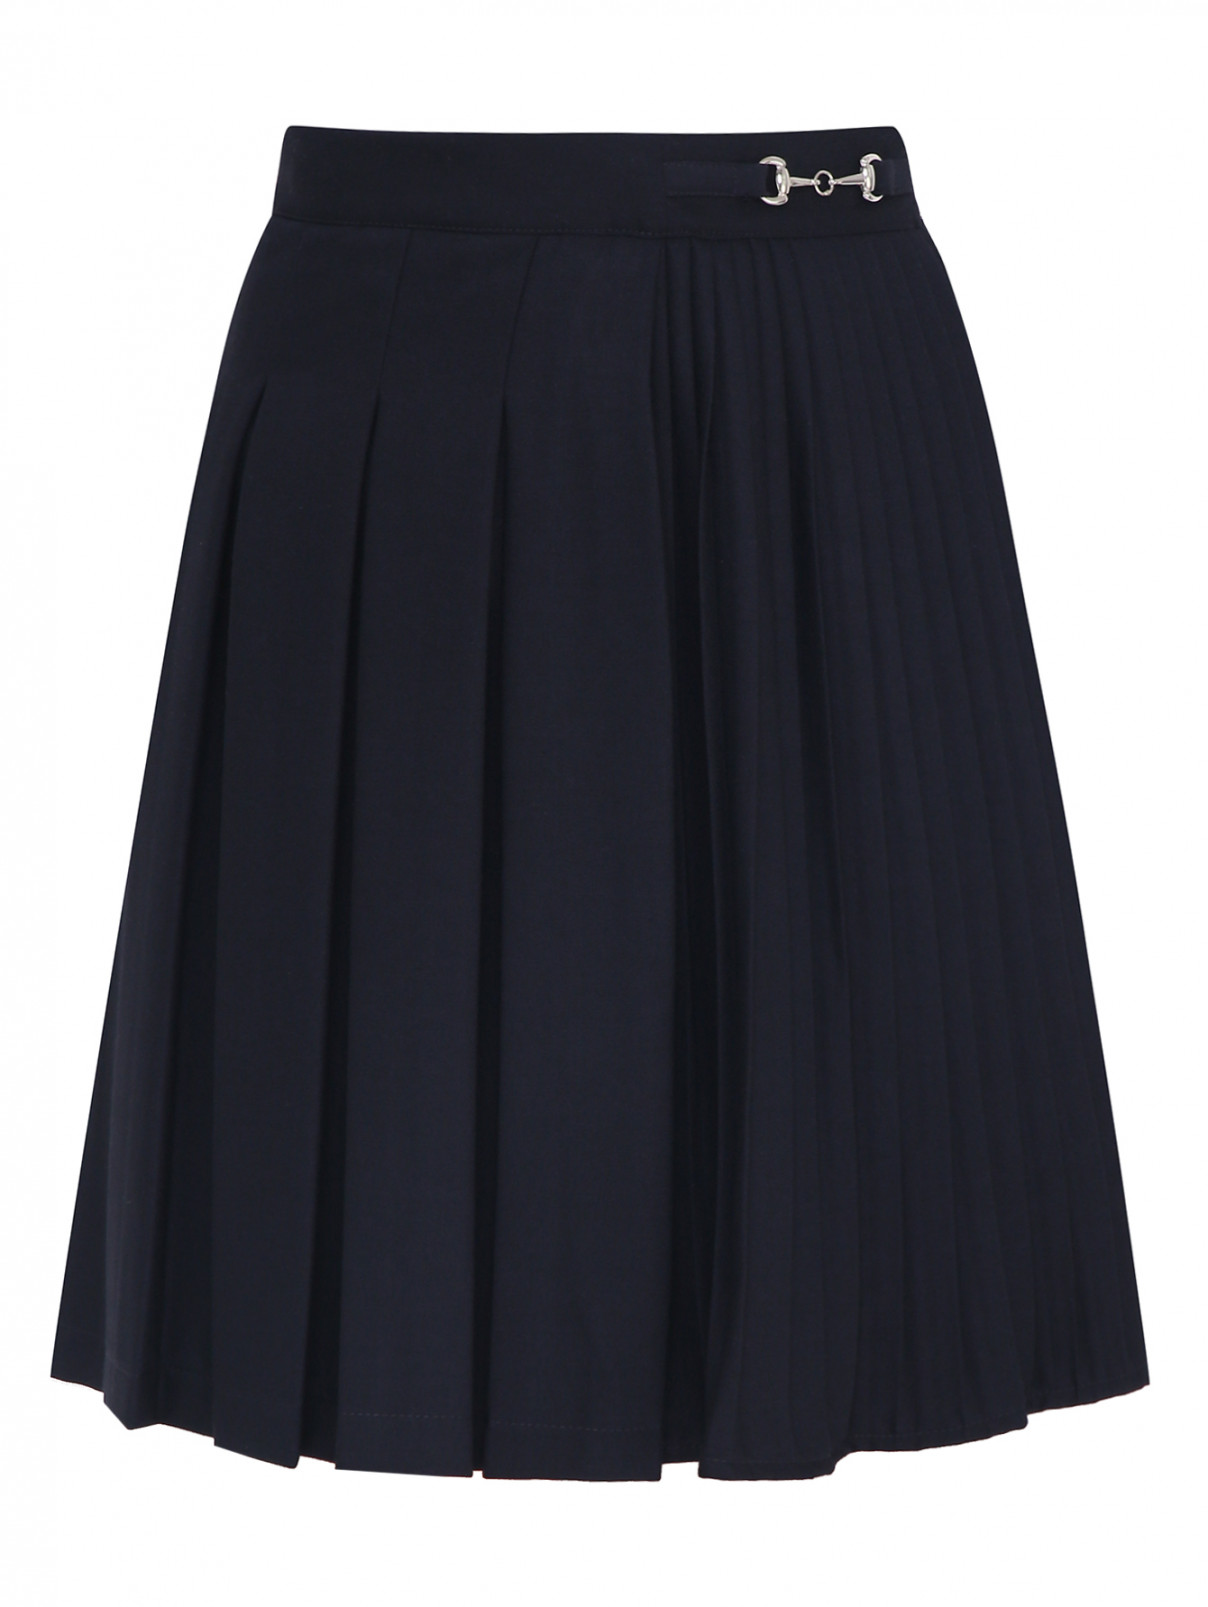 Юбка в складку с плиссированной вставкой Aletta Couture  –  Общий вид  – Цвет:  Черный